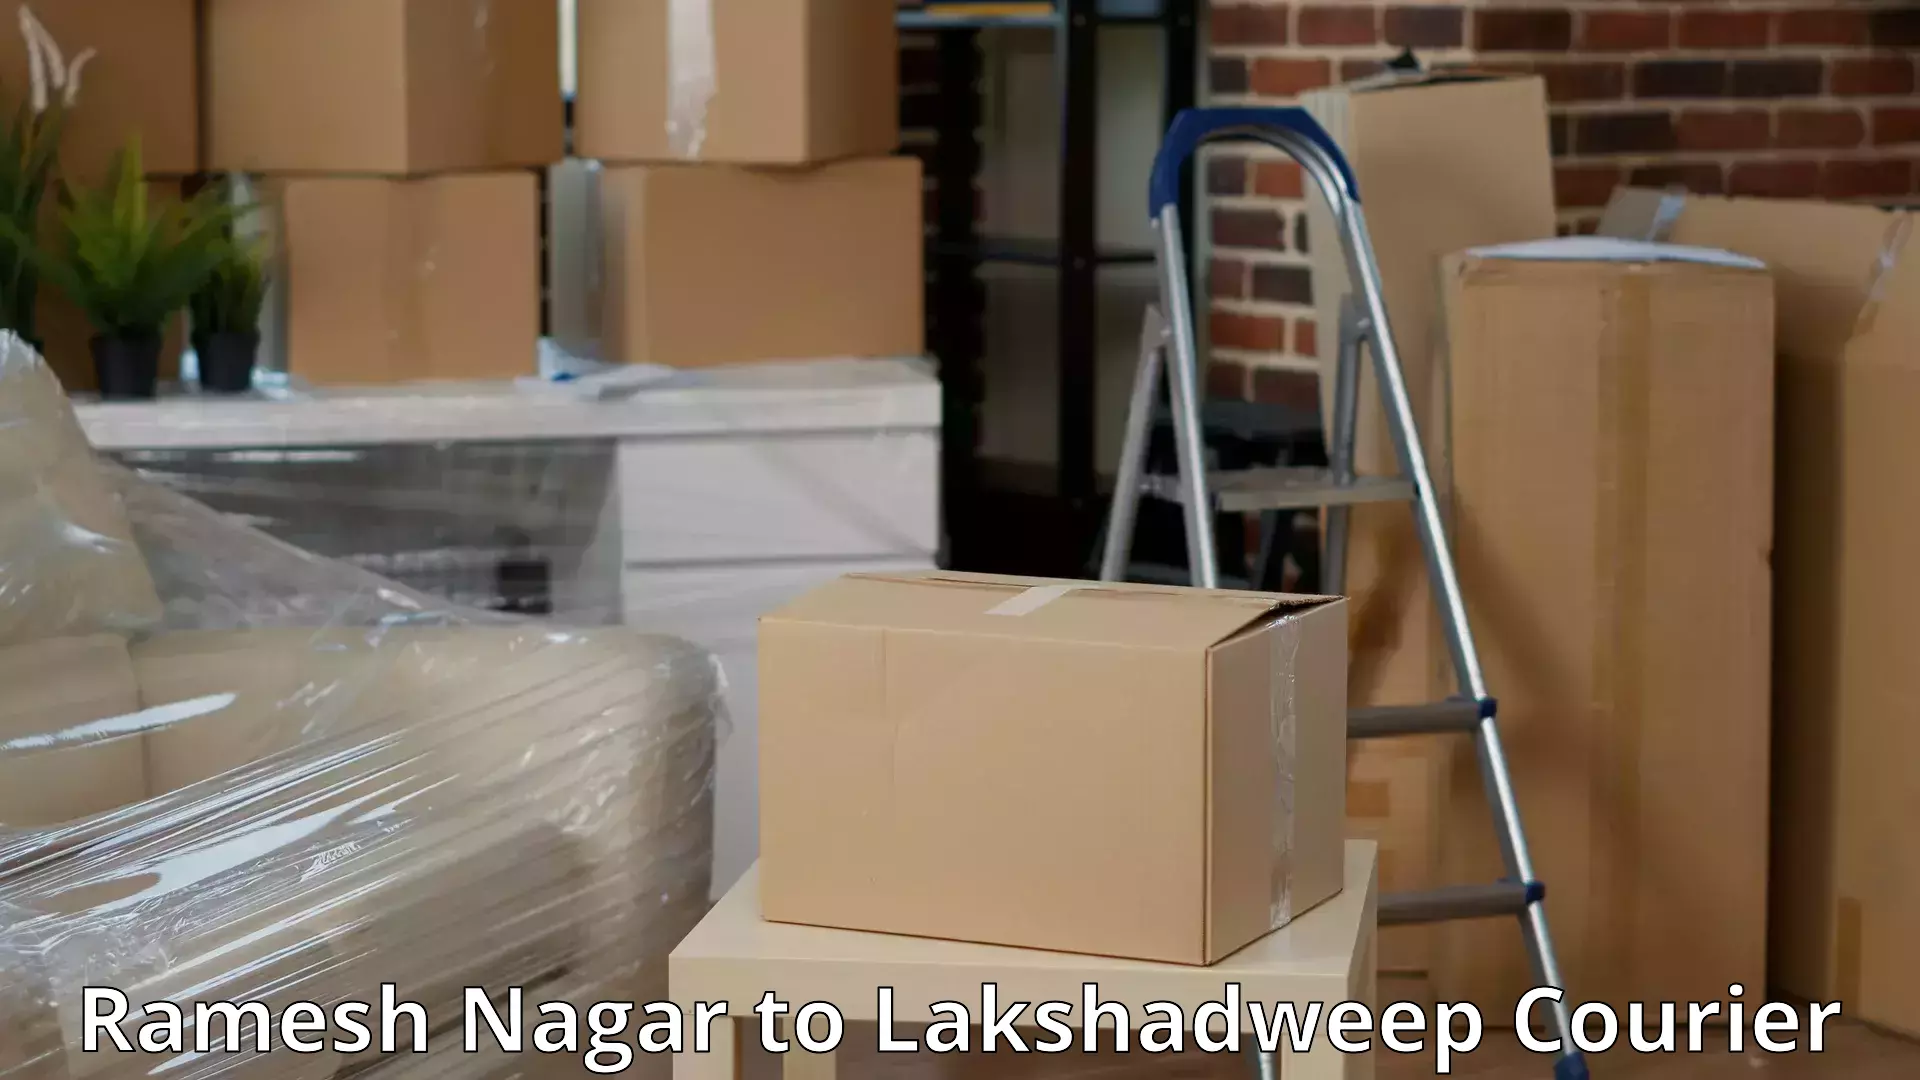 Furniture moving plans Ramesh Nagar to Lakshadweep